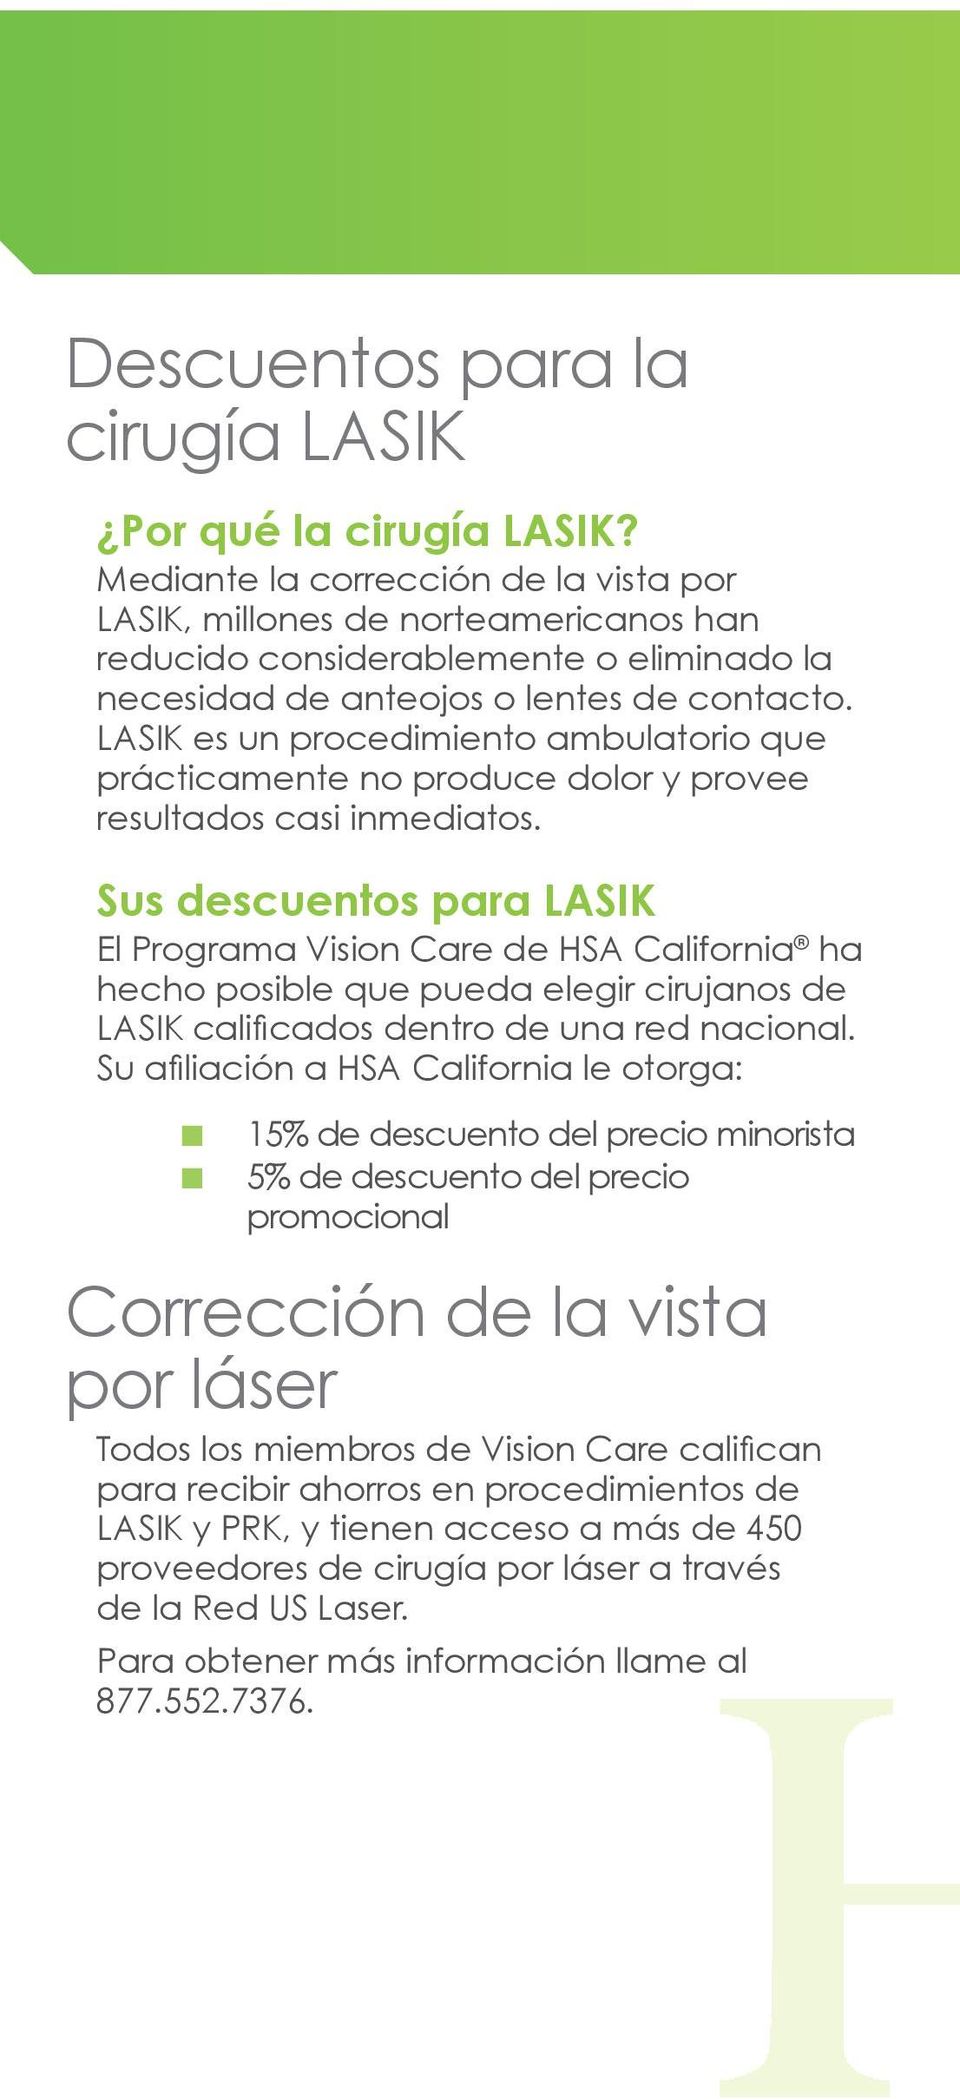 LASIK es un procedimiento ambulatorio que prácticamente no produce dolor y provee resultados casi inmediatos.